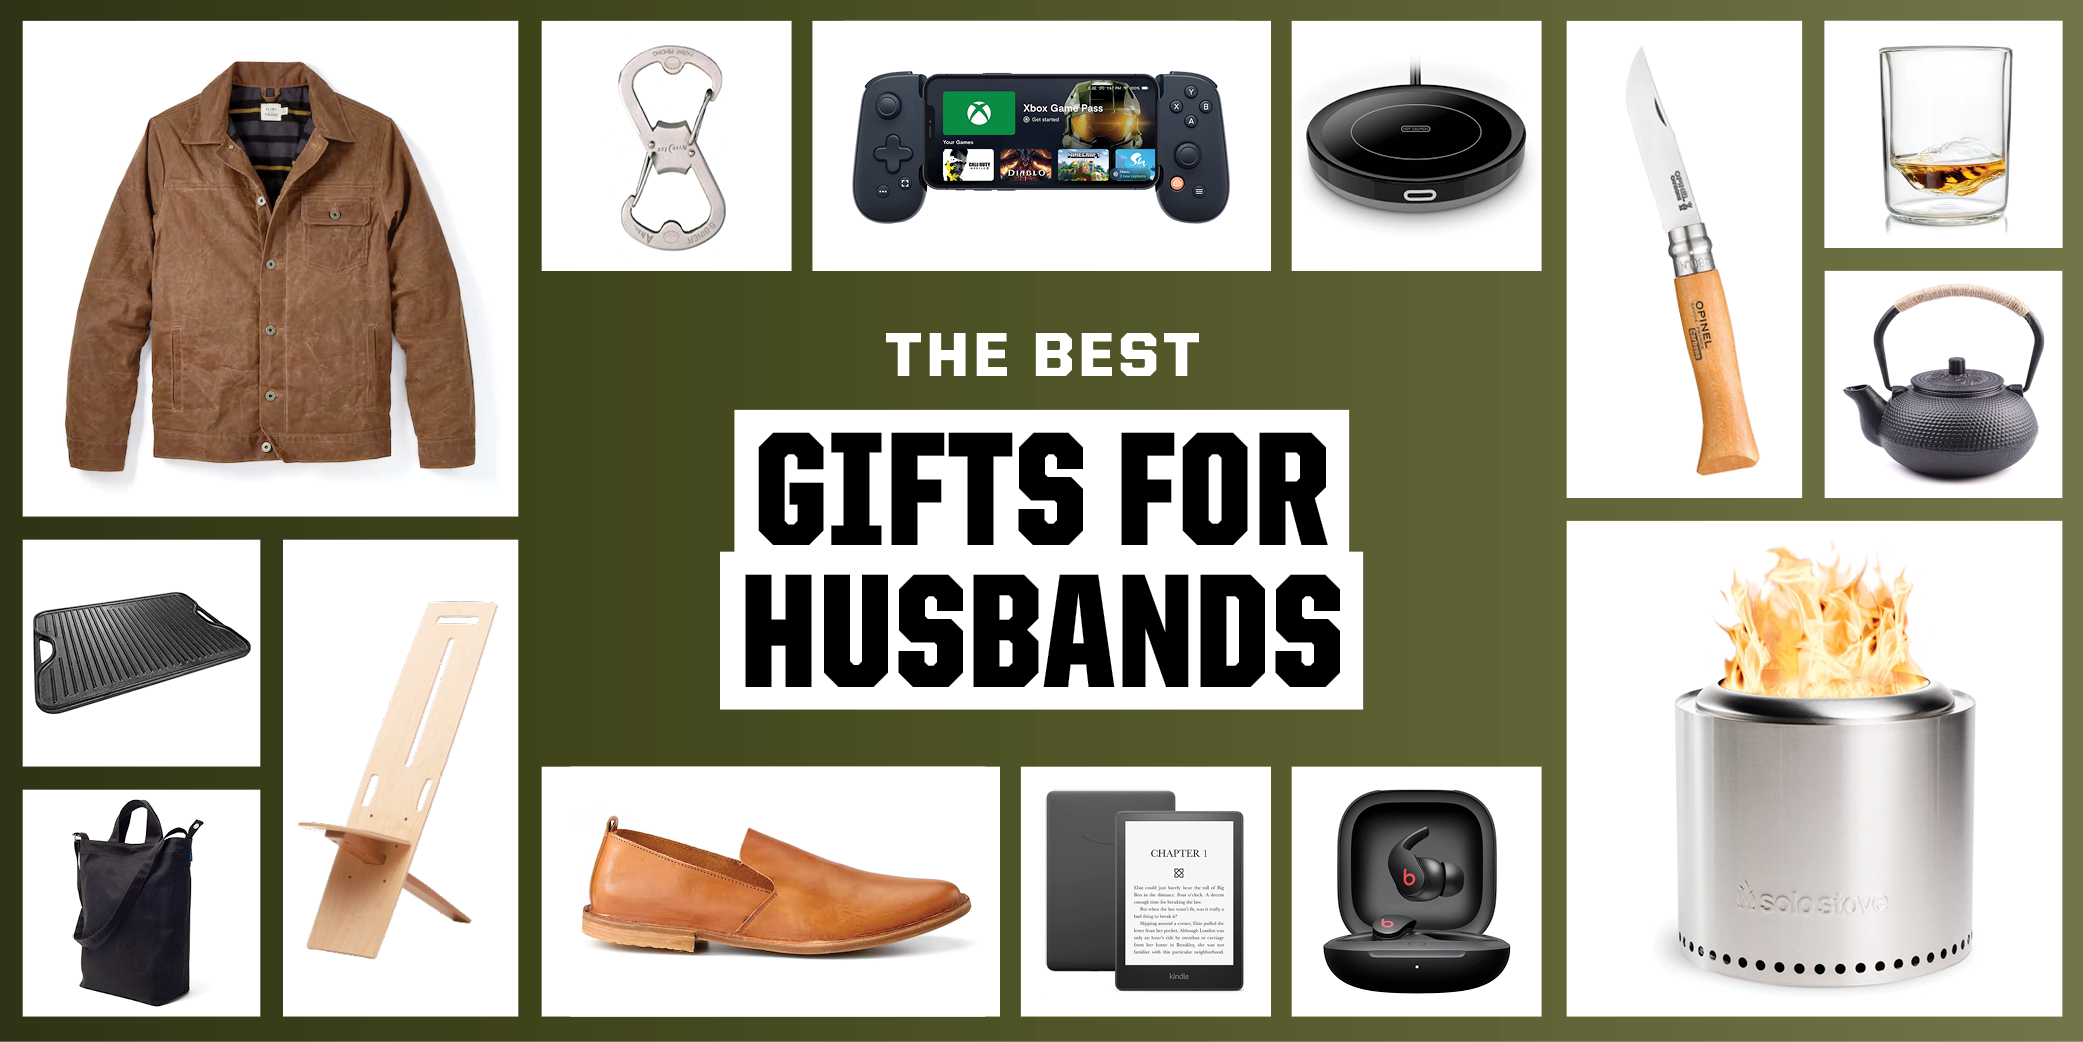 https://hips.hearstapps.com/hmg-prod/images/pop-the-best-gifts-for-husbands-1663682550.png